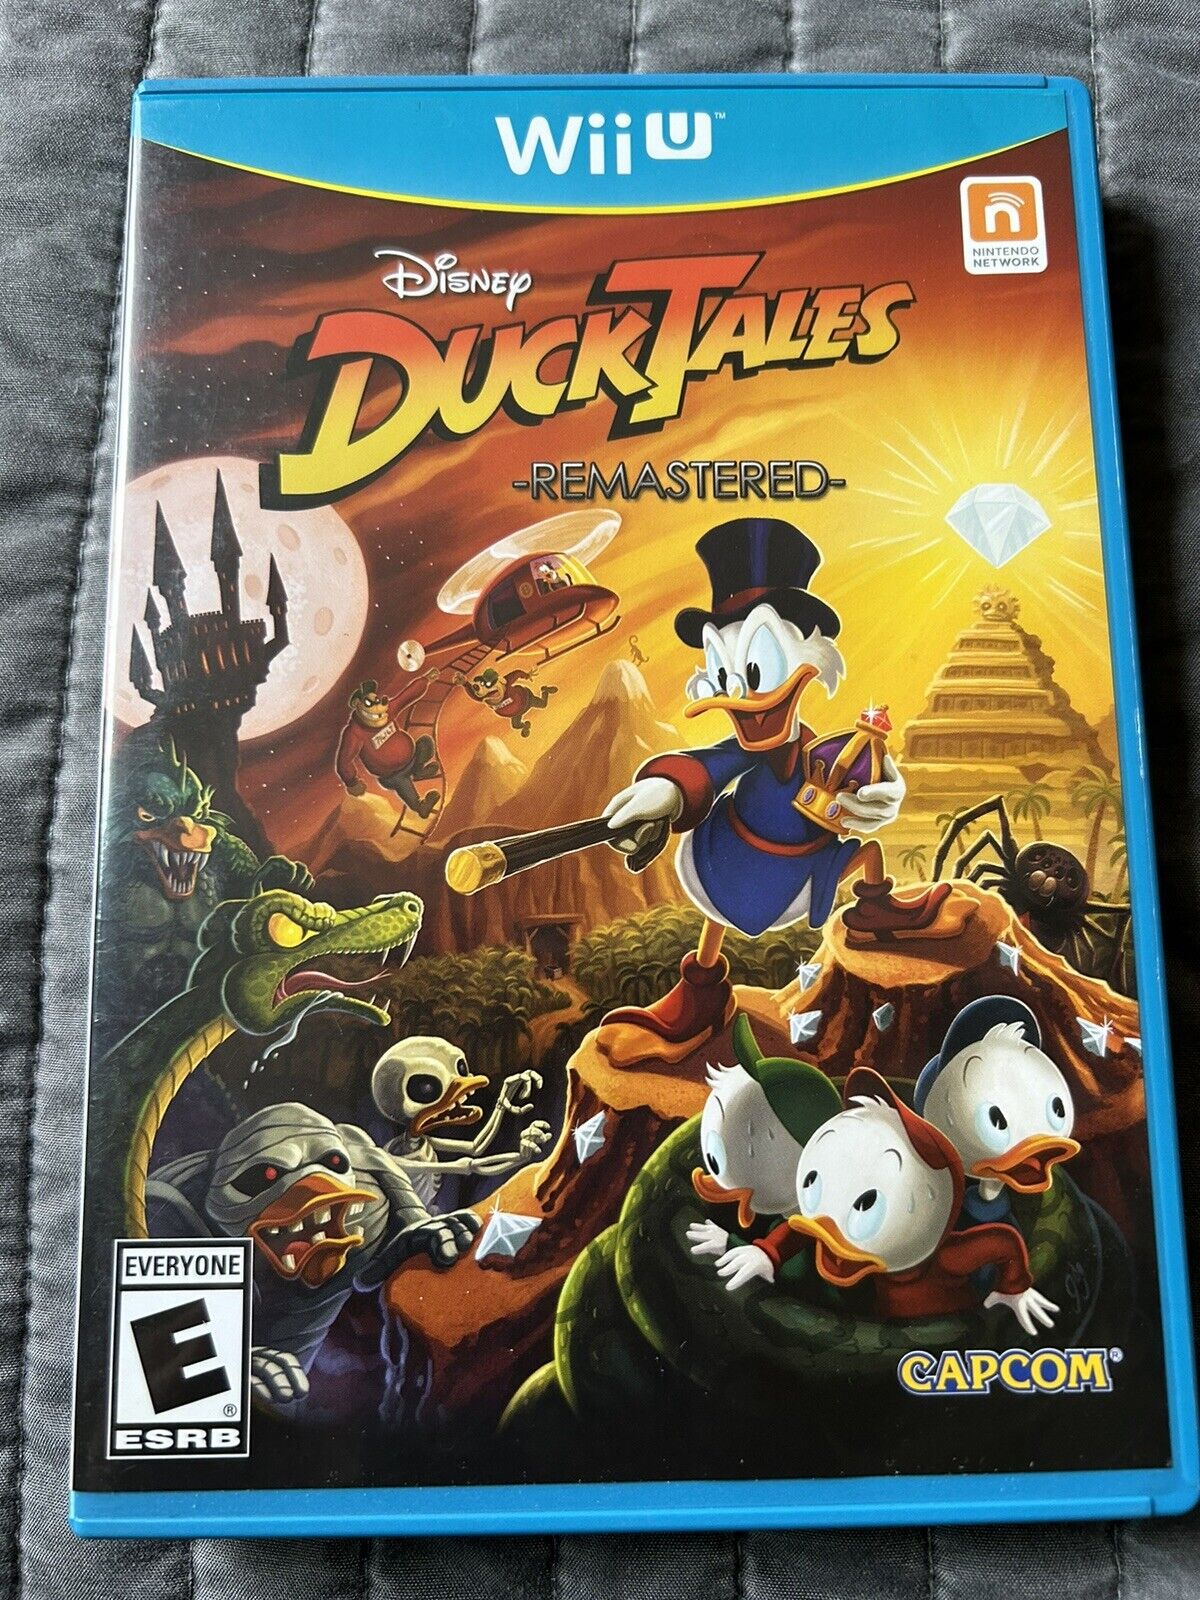 DuckTales: Remastered (Nintendo Wii U, 2013)